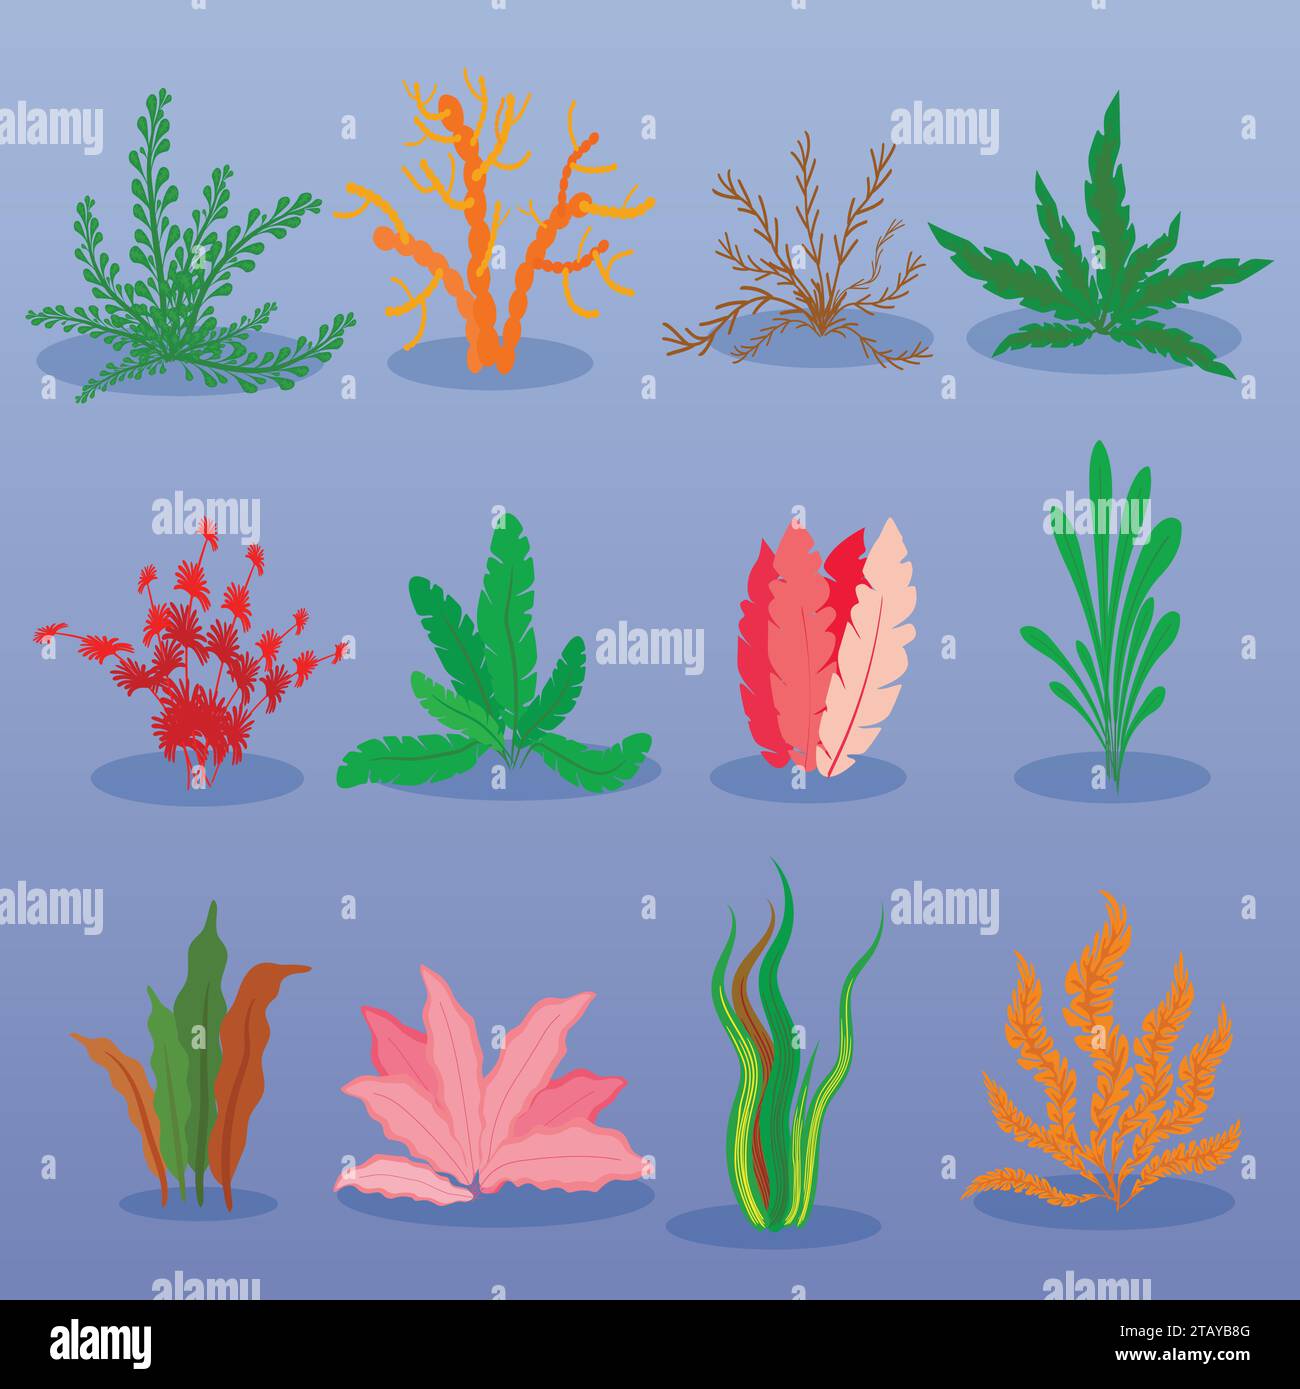 Vecteur d'algues sous-marines sur fond bleu. Plantes marines et algues marines aquatiques. Collection de types algues d'aquarium. Illustration vectorielle Illustration de Vecteur